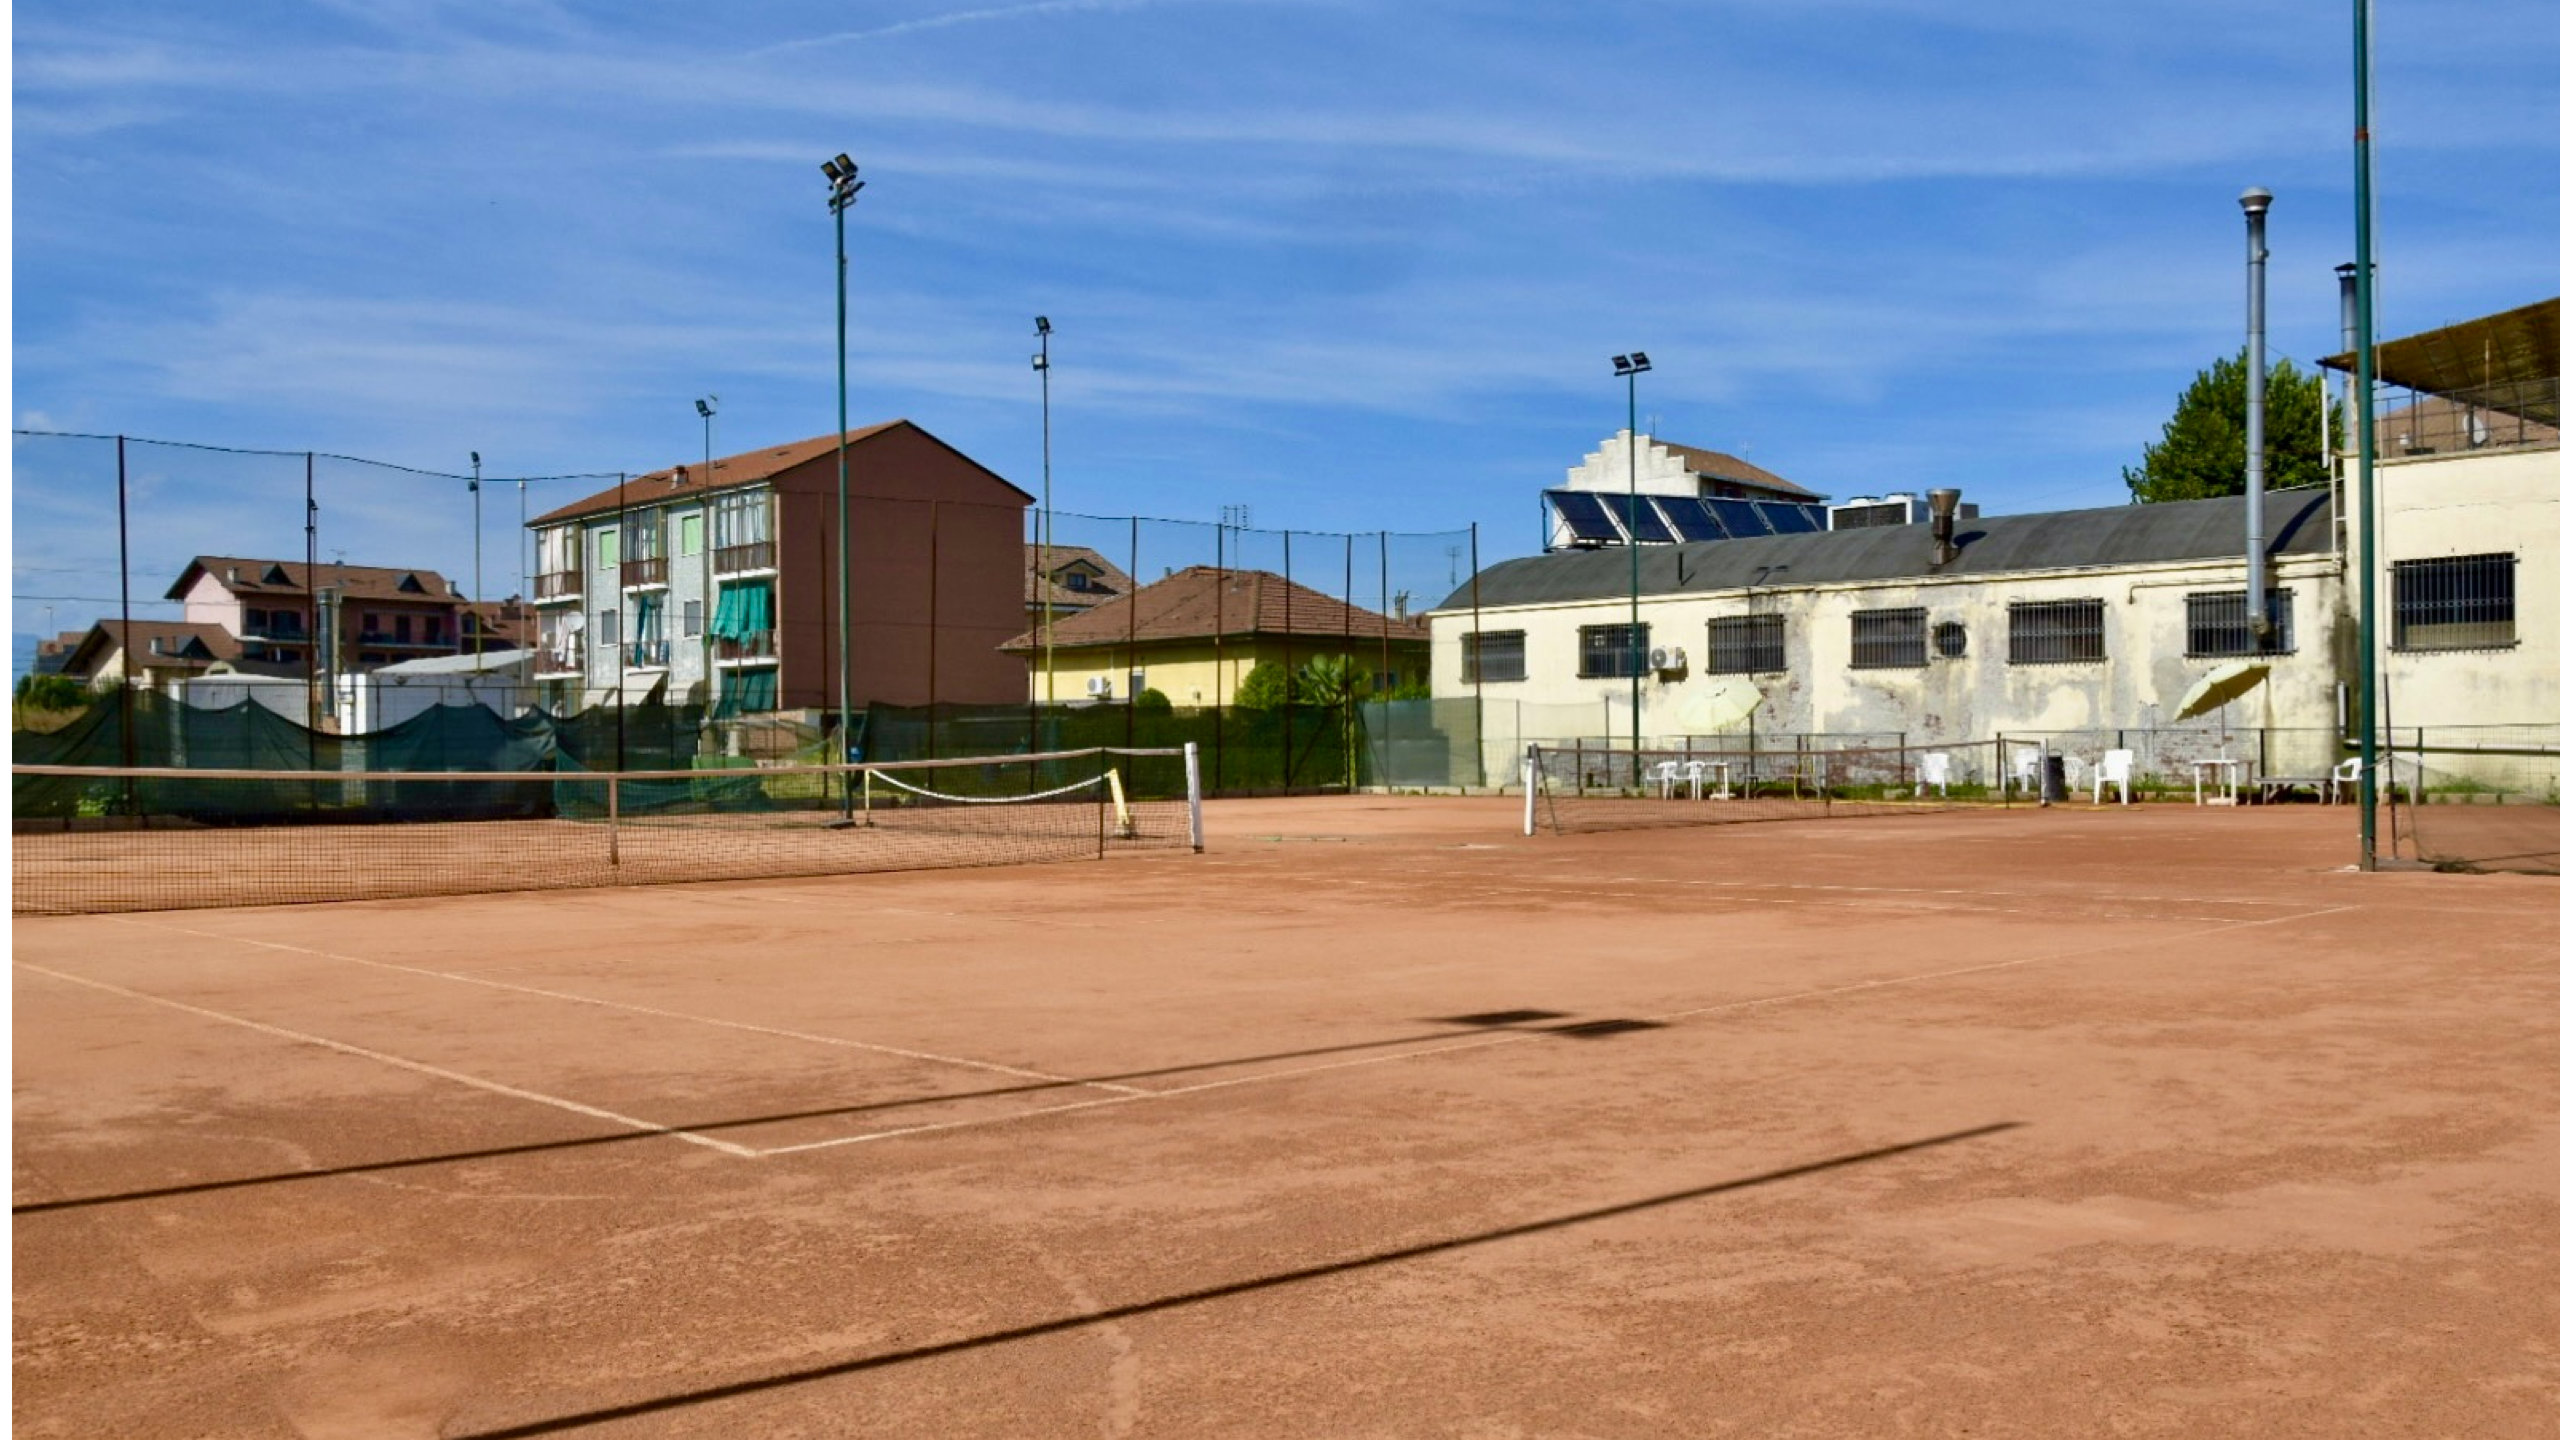 Centro Sportivo Camaleonte